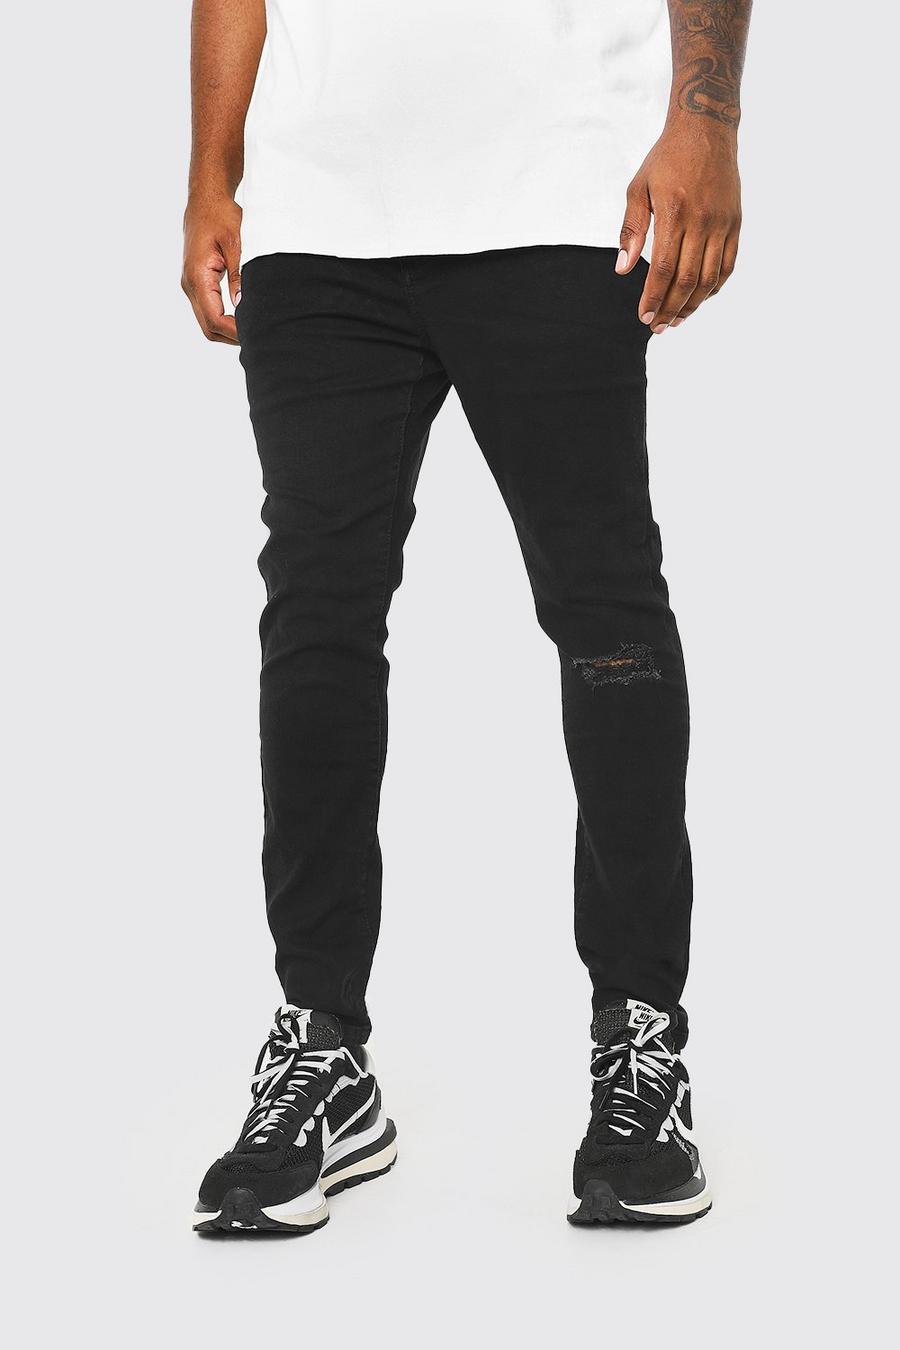 Jeans Plus Size Super Skinny Fit con spacco sul ginocchio, Nero black